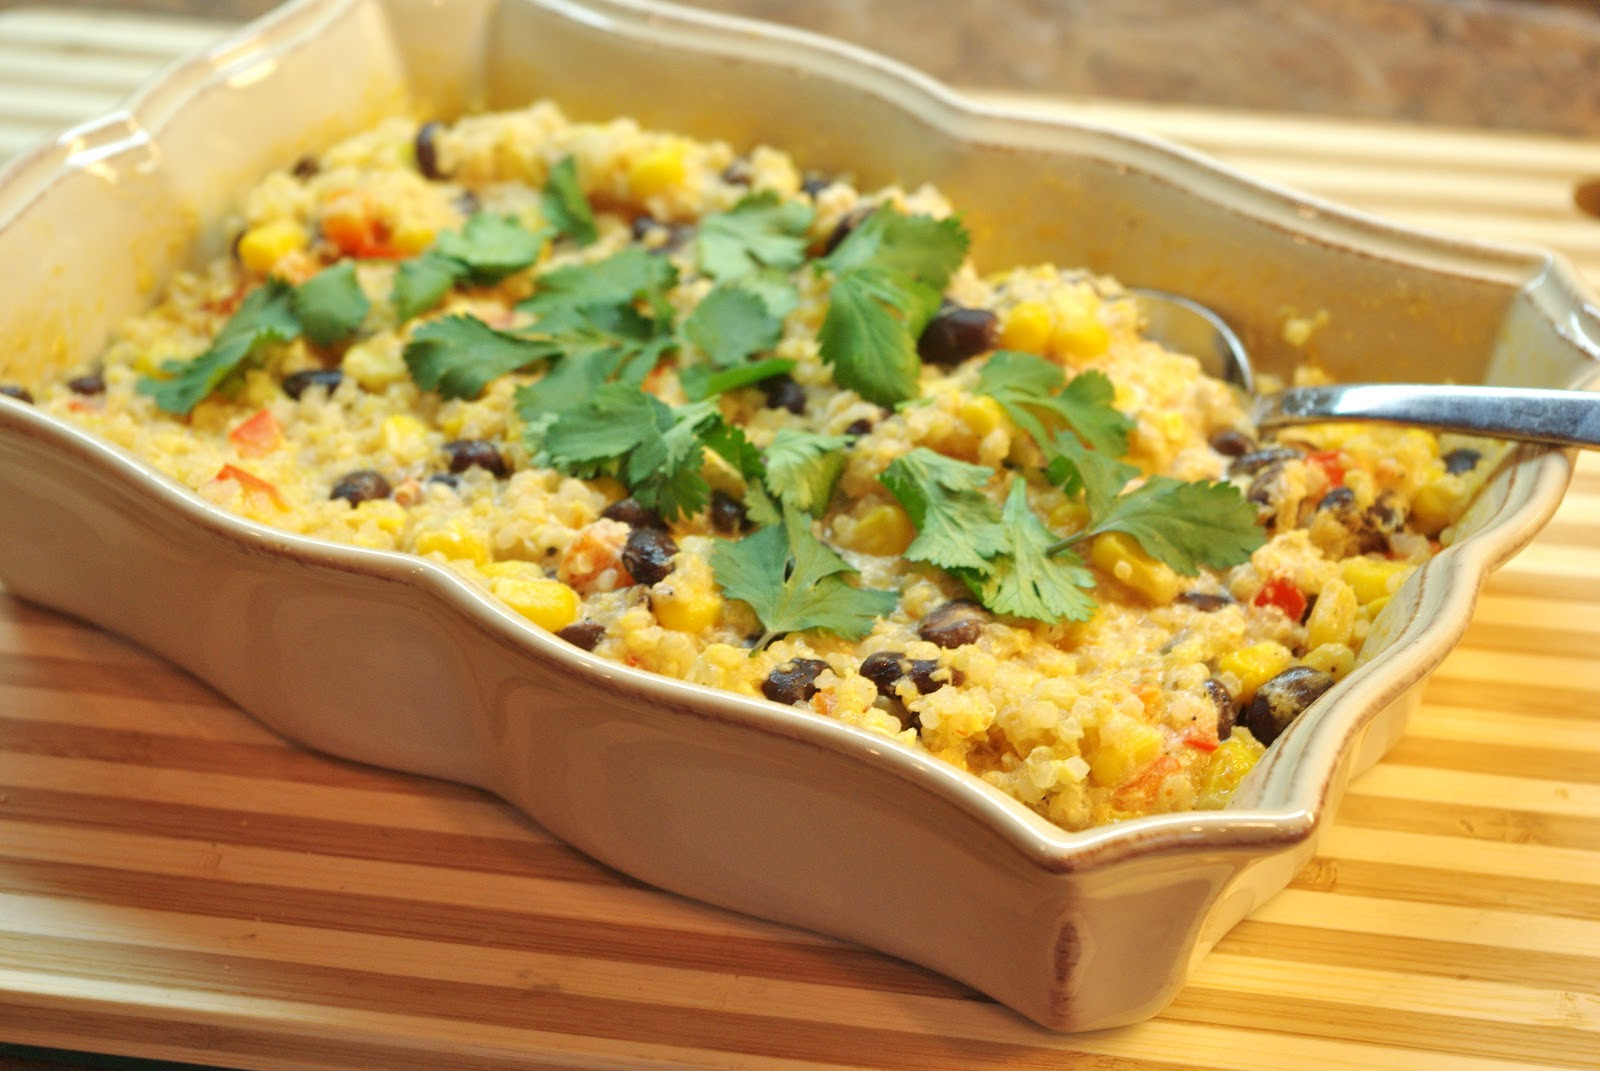 Quinoa Recipes Side Dish
 Mennonite Girls Can Cook Quinoa Side Dish